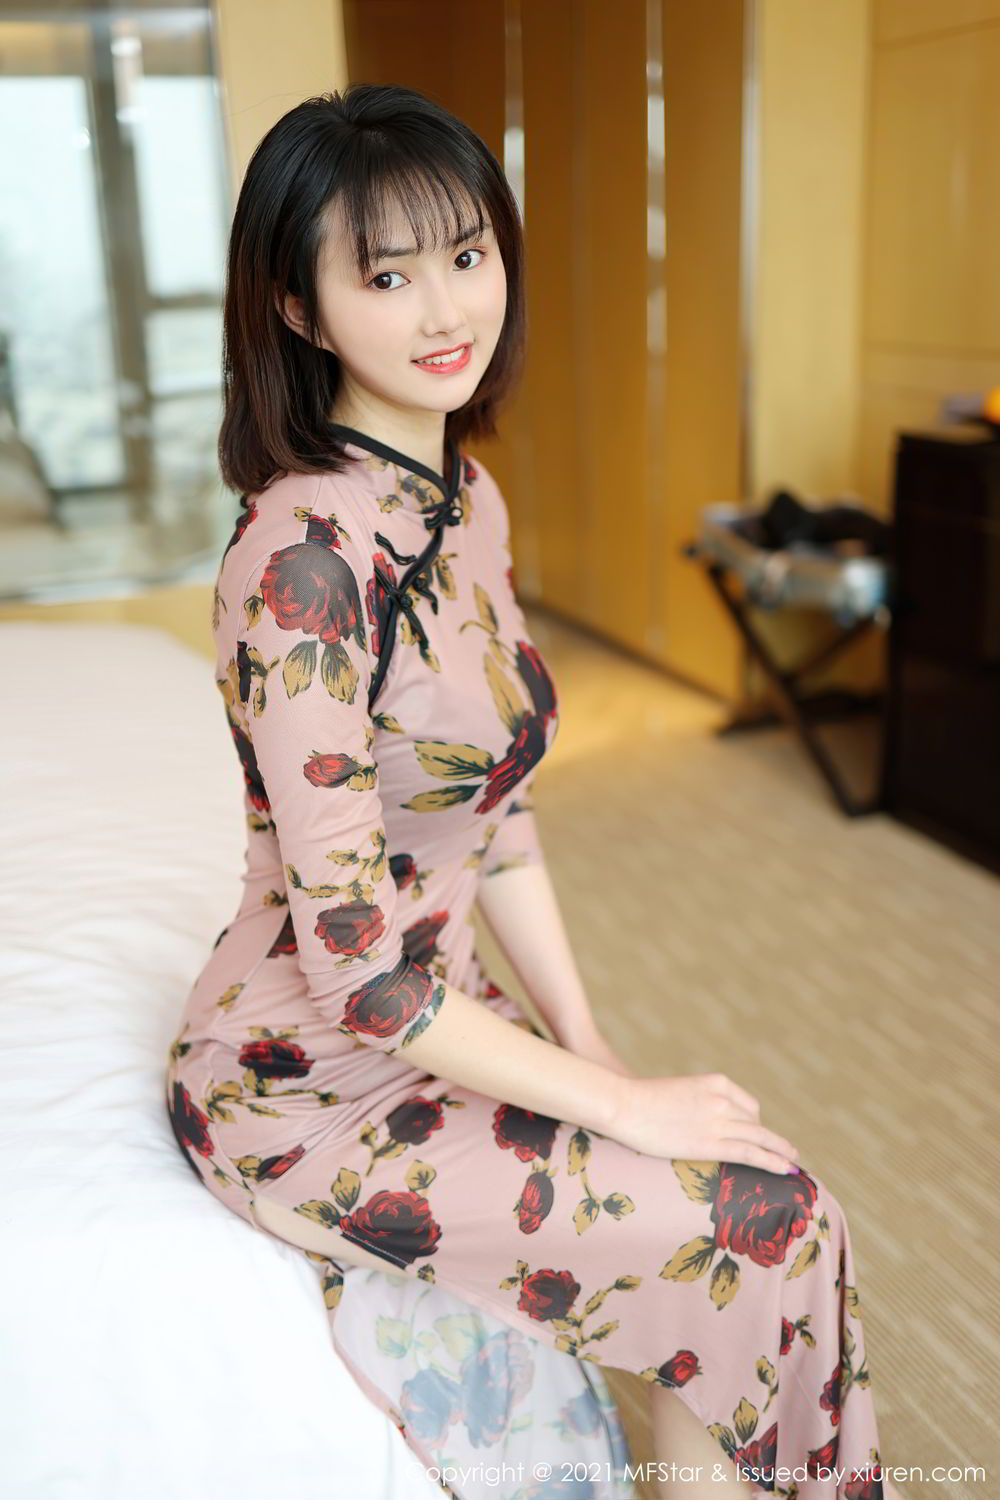 小肉肉的可爱短发刘海美女墨韩古典韵味旗袍装高清私房床上写真套图图片